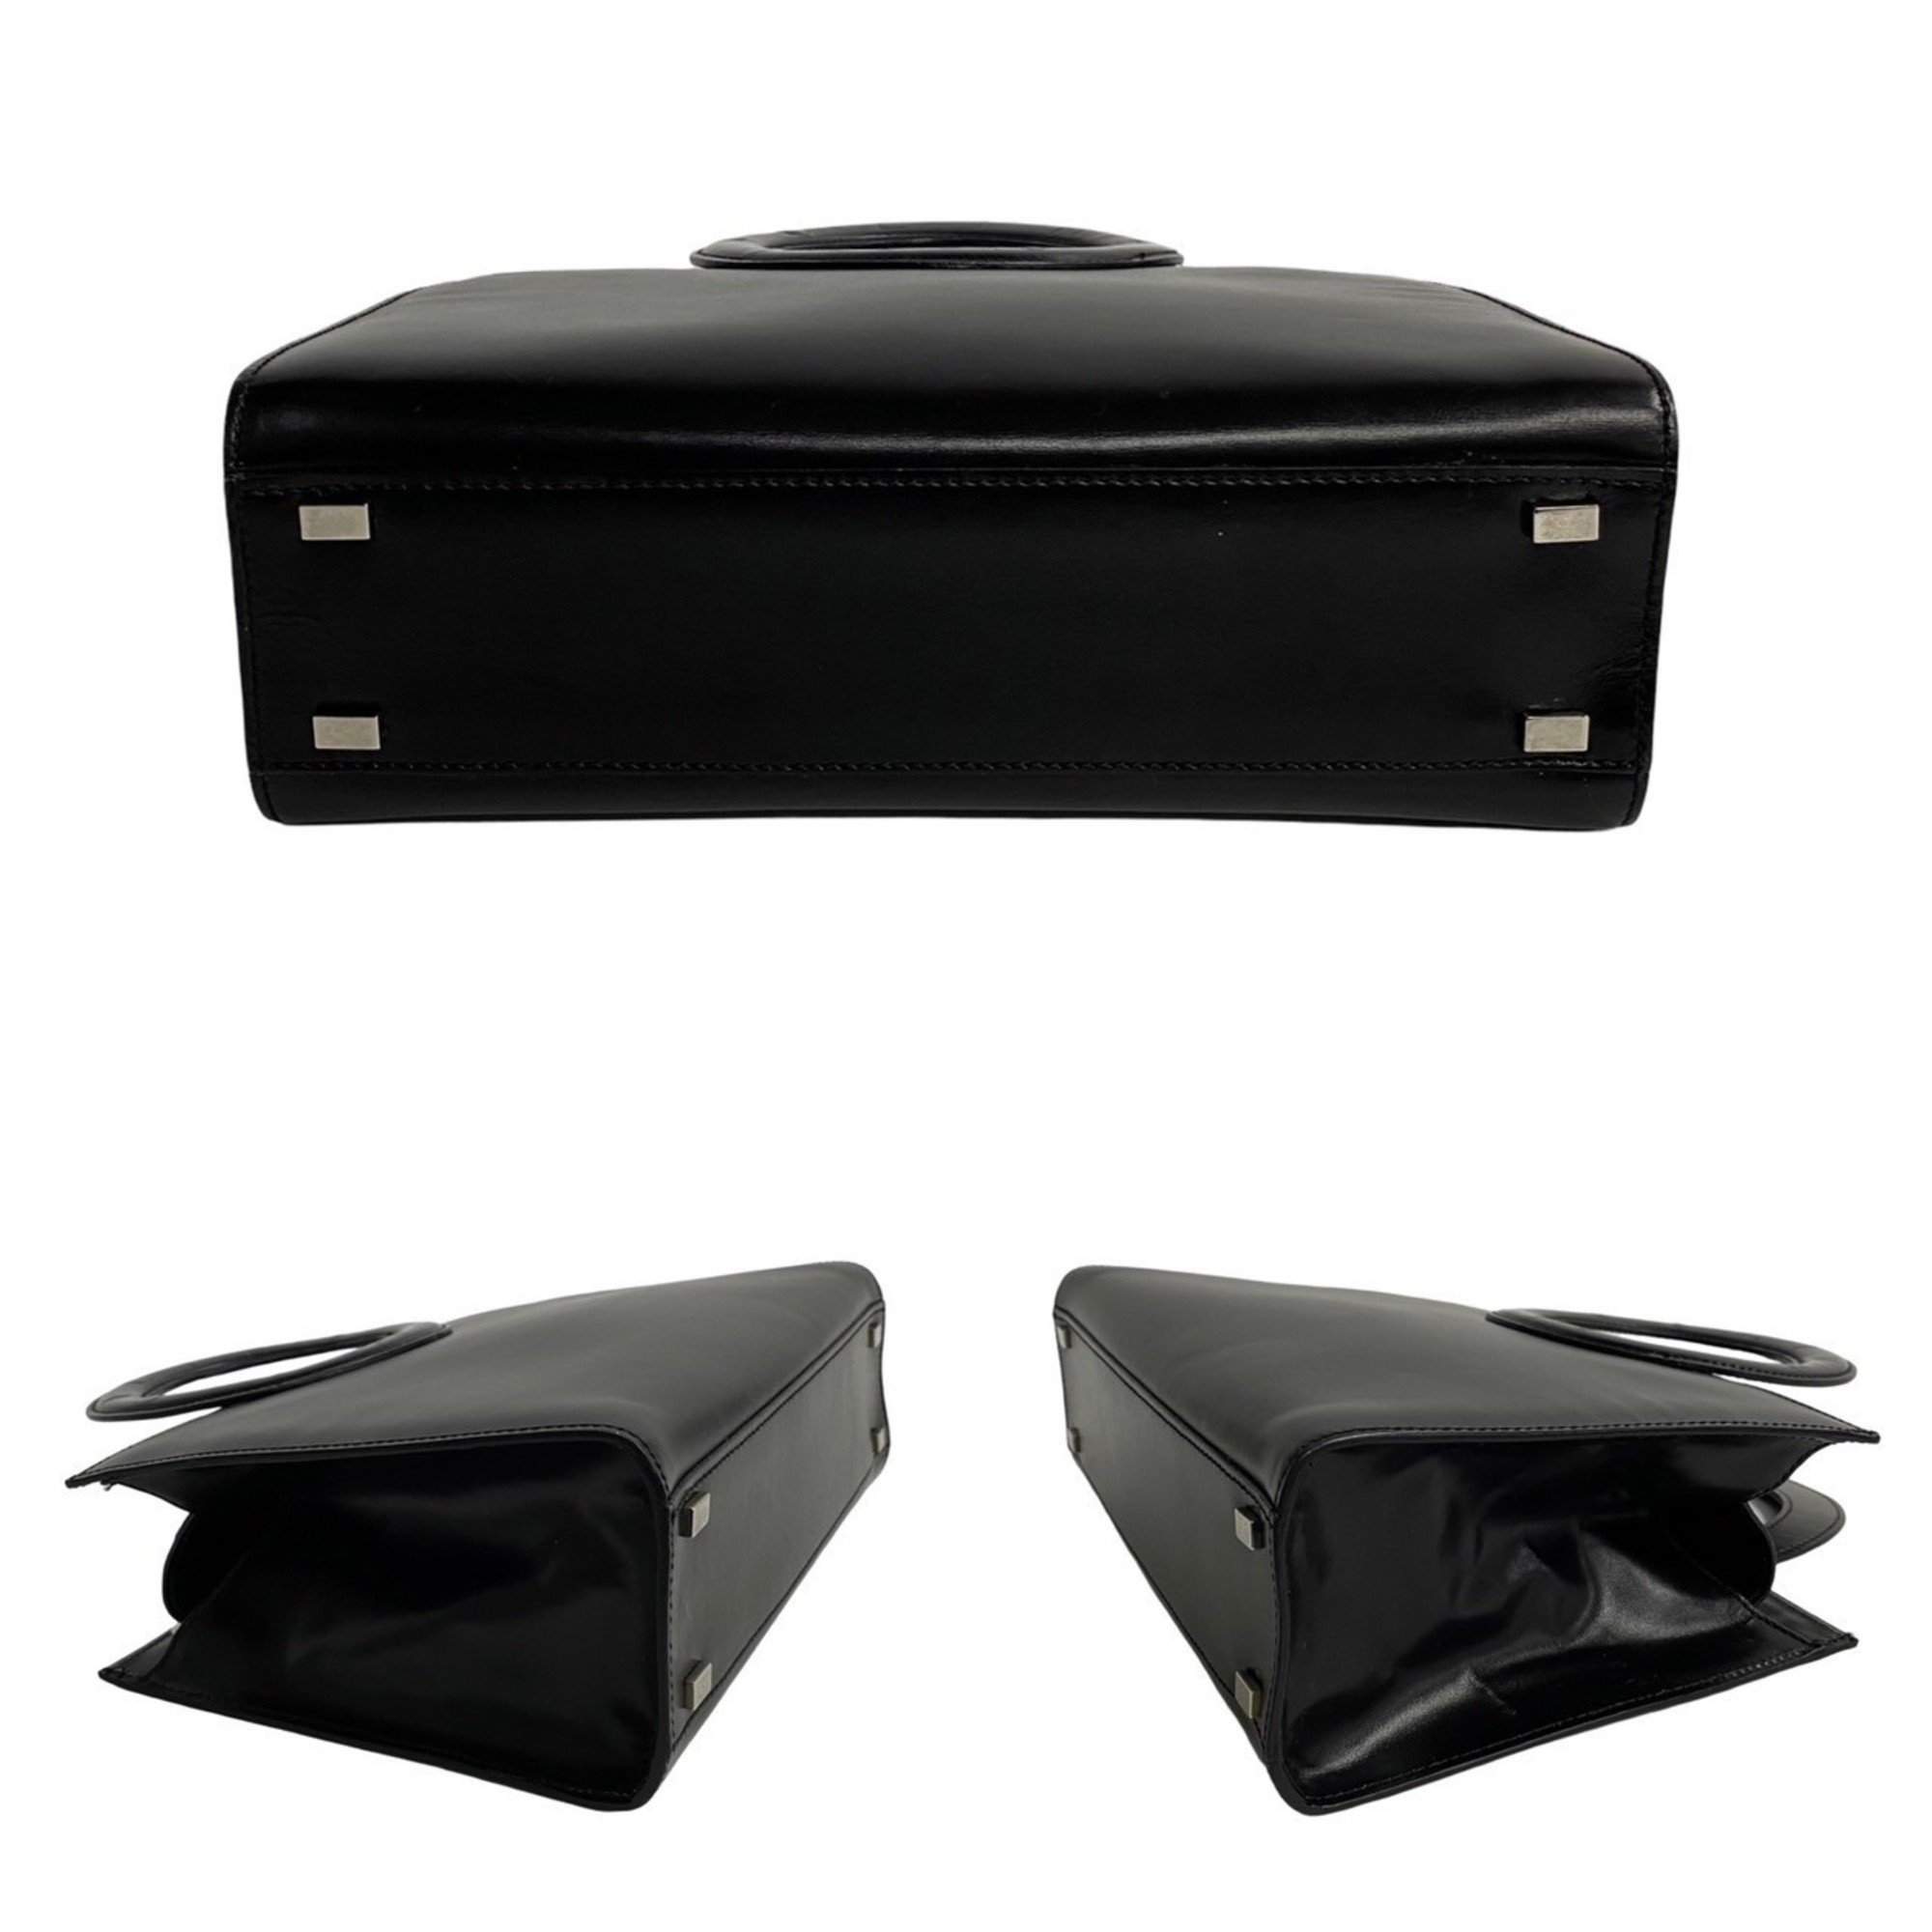 CELINE Circle Calf Leather 2way Handbag Shoulder Bag Black 23073